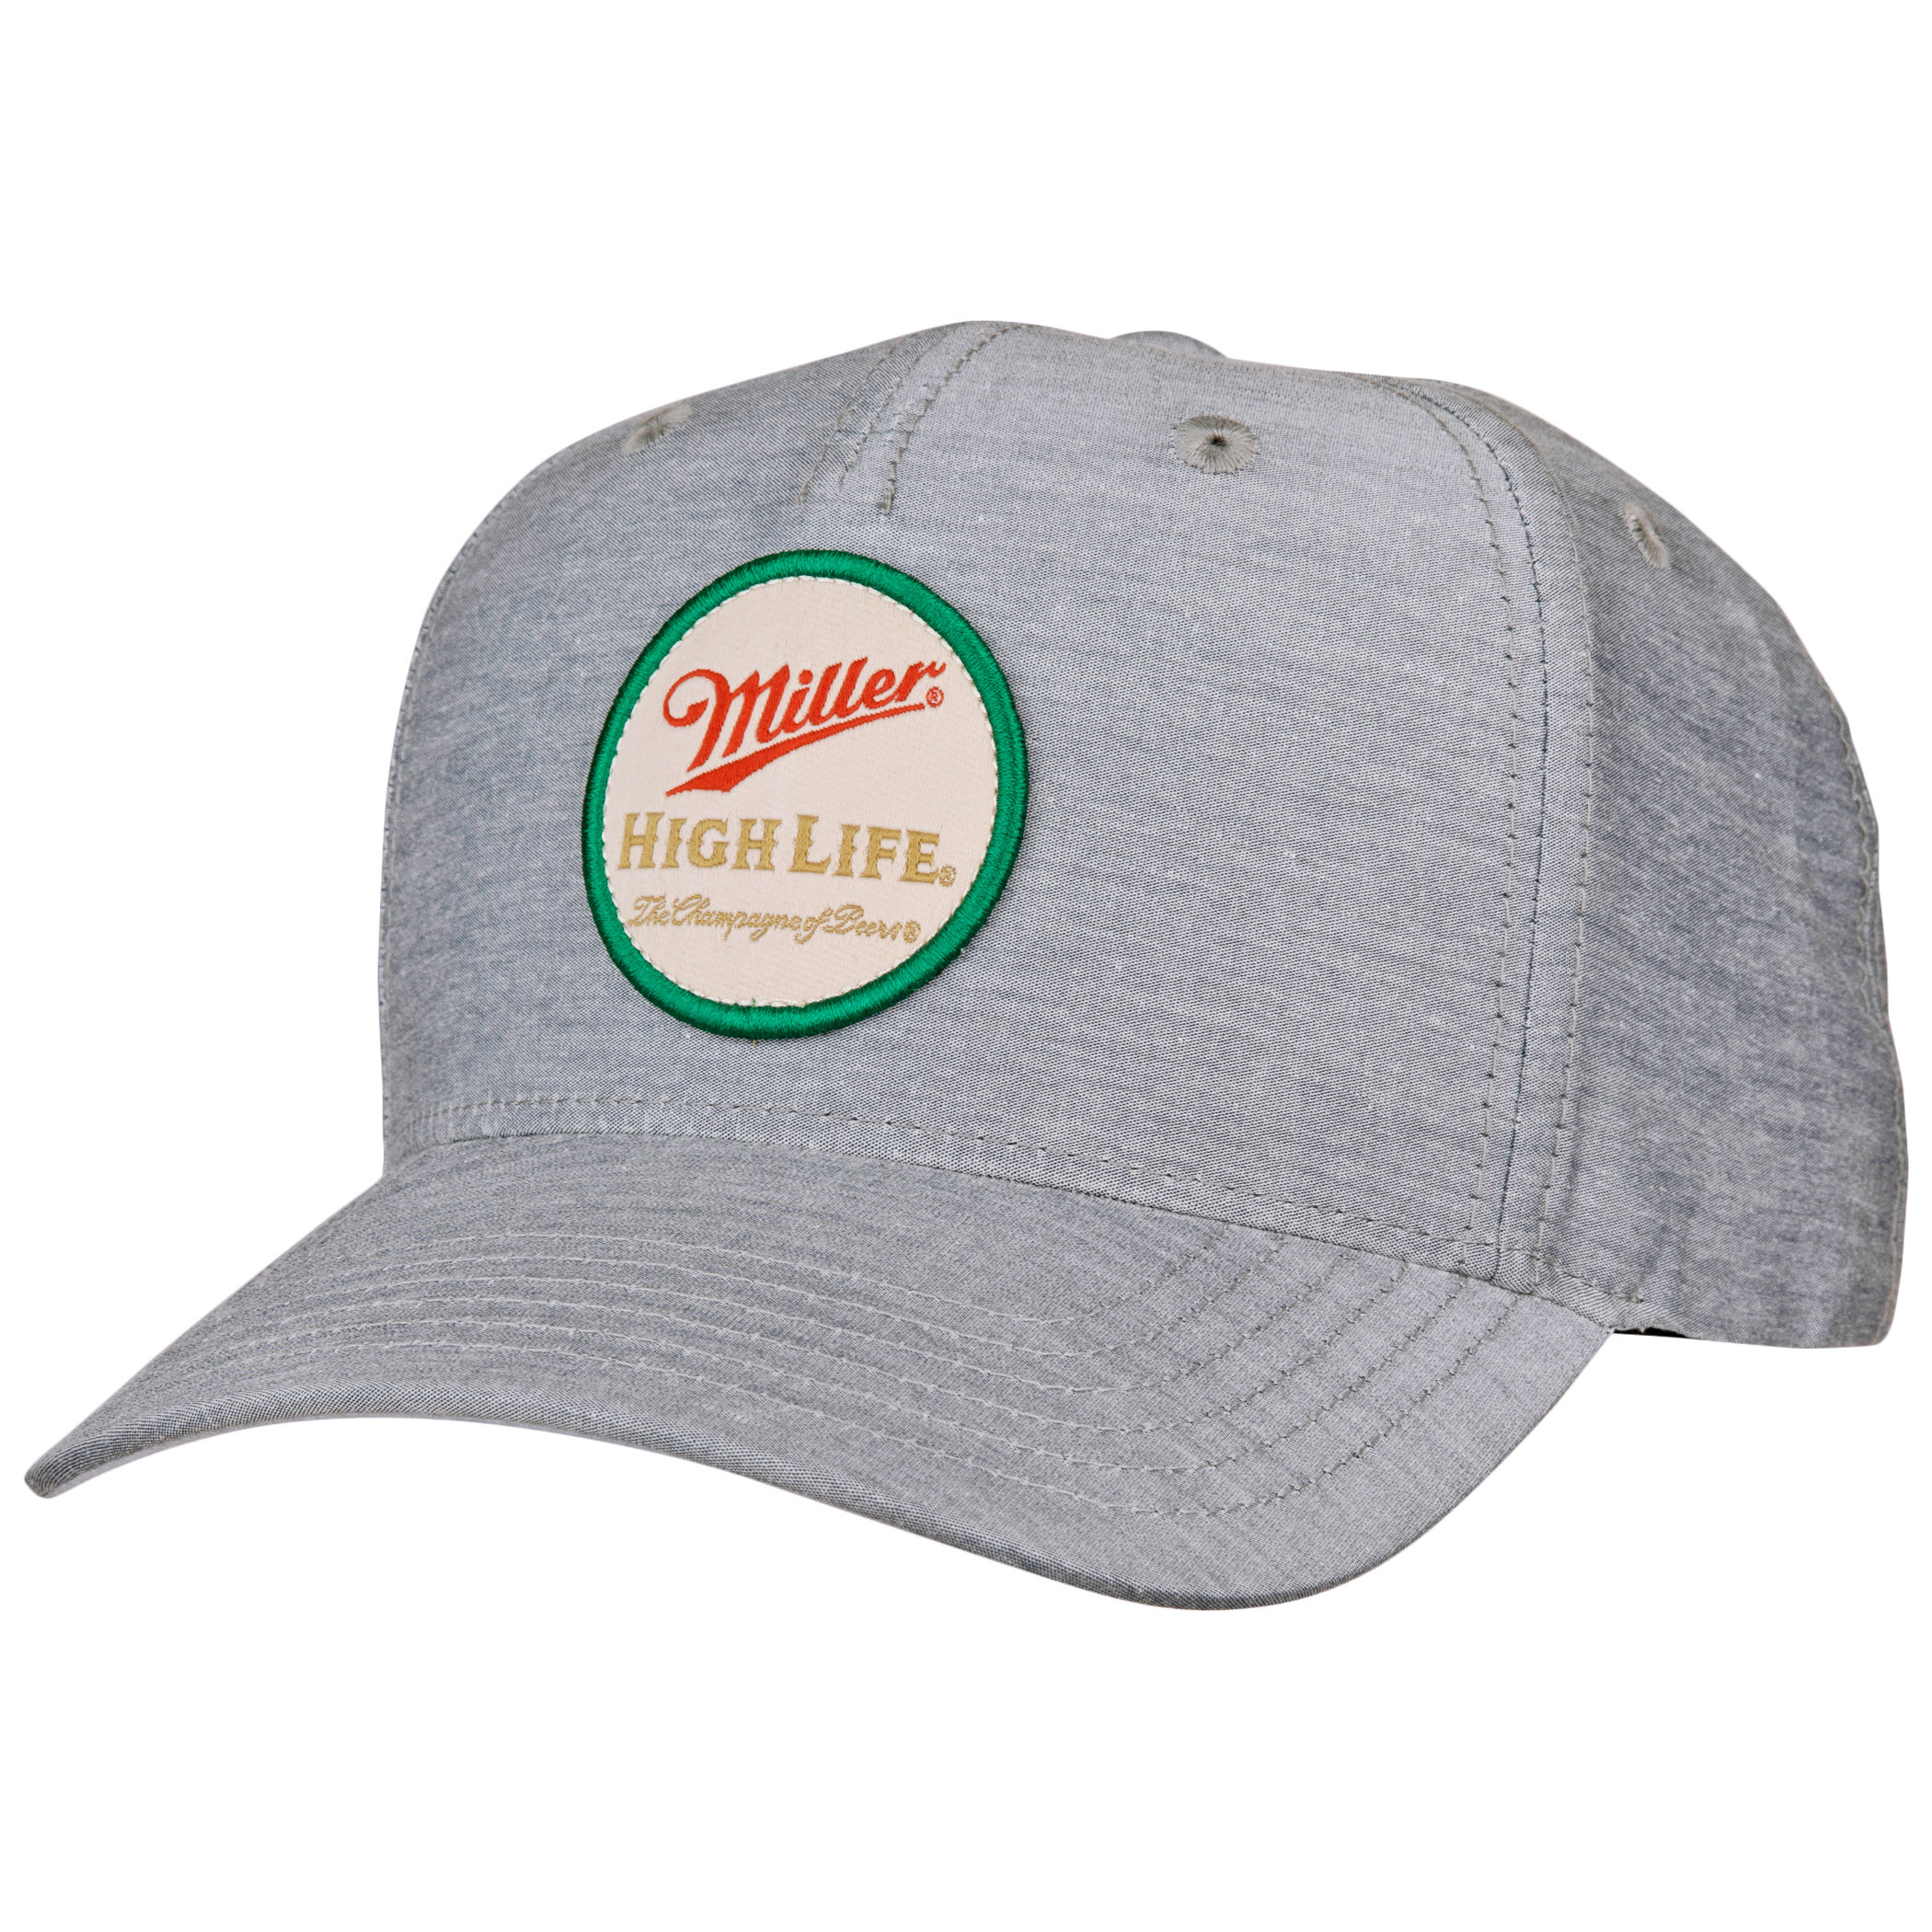 Miller High Life Beer Brand Patch Adjustable Hat